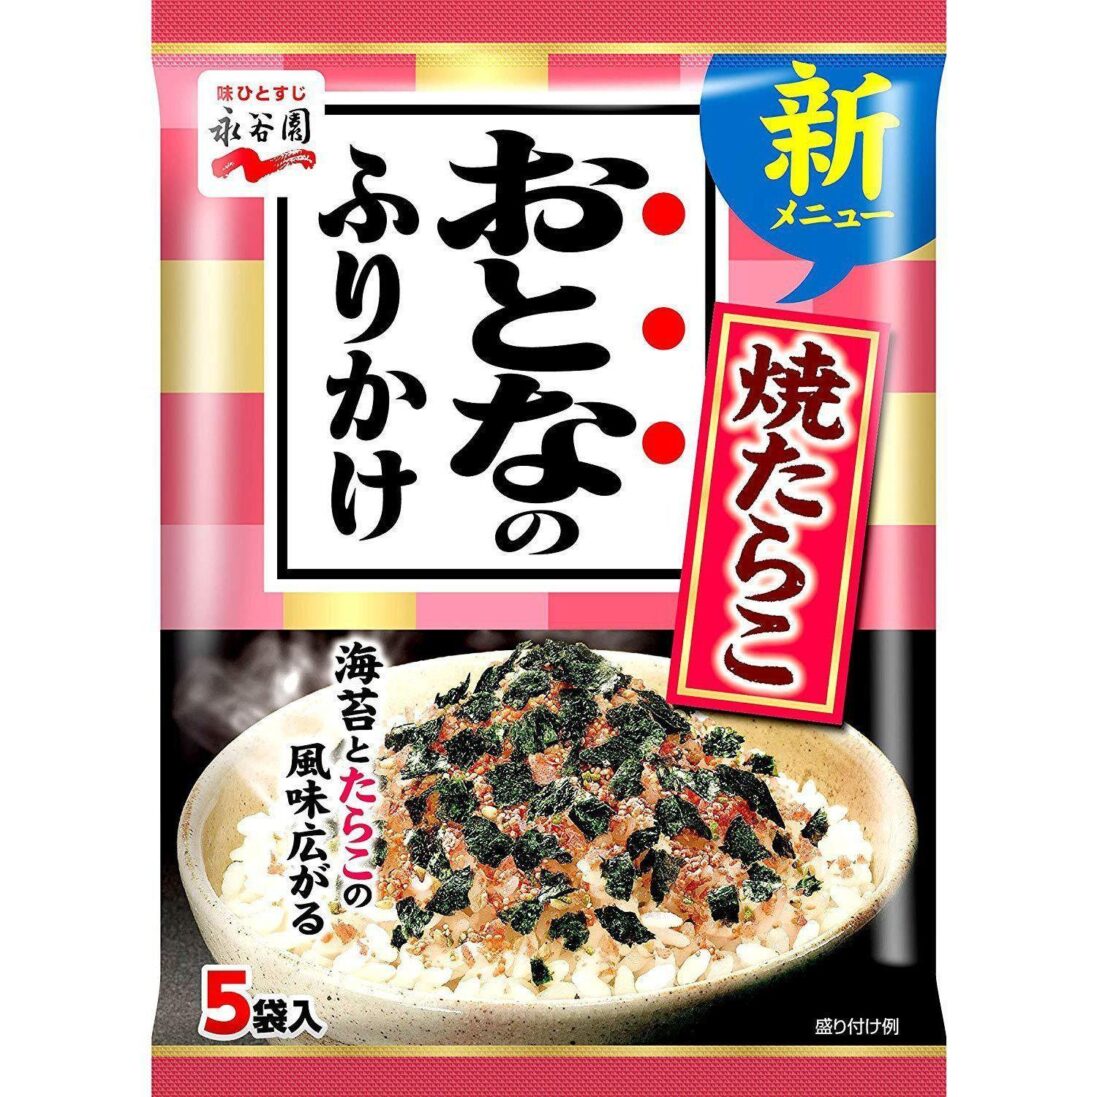 Nagatanien-Otona-no-Furikake-Rice-Seasoning-Fried-Tarako-12g-Japanese-Taste_53526e2b-e3d0-4269-8ecb-28995c218ee2_2048x.jpg